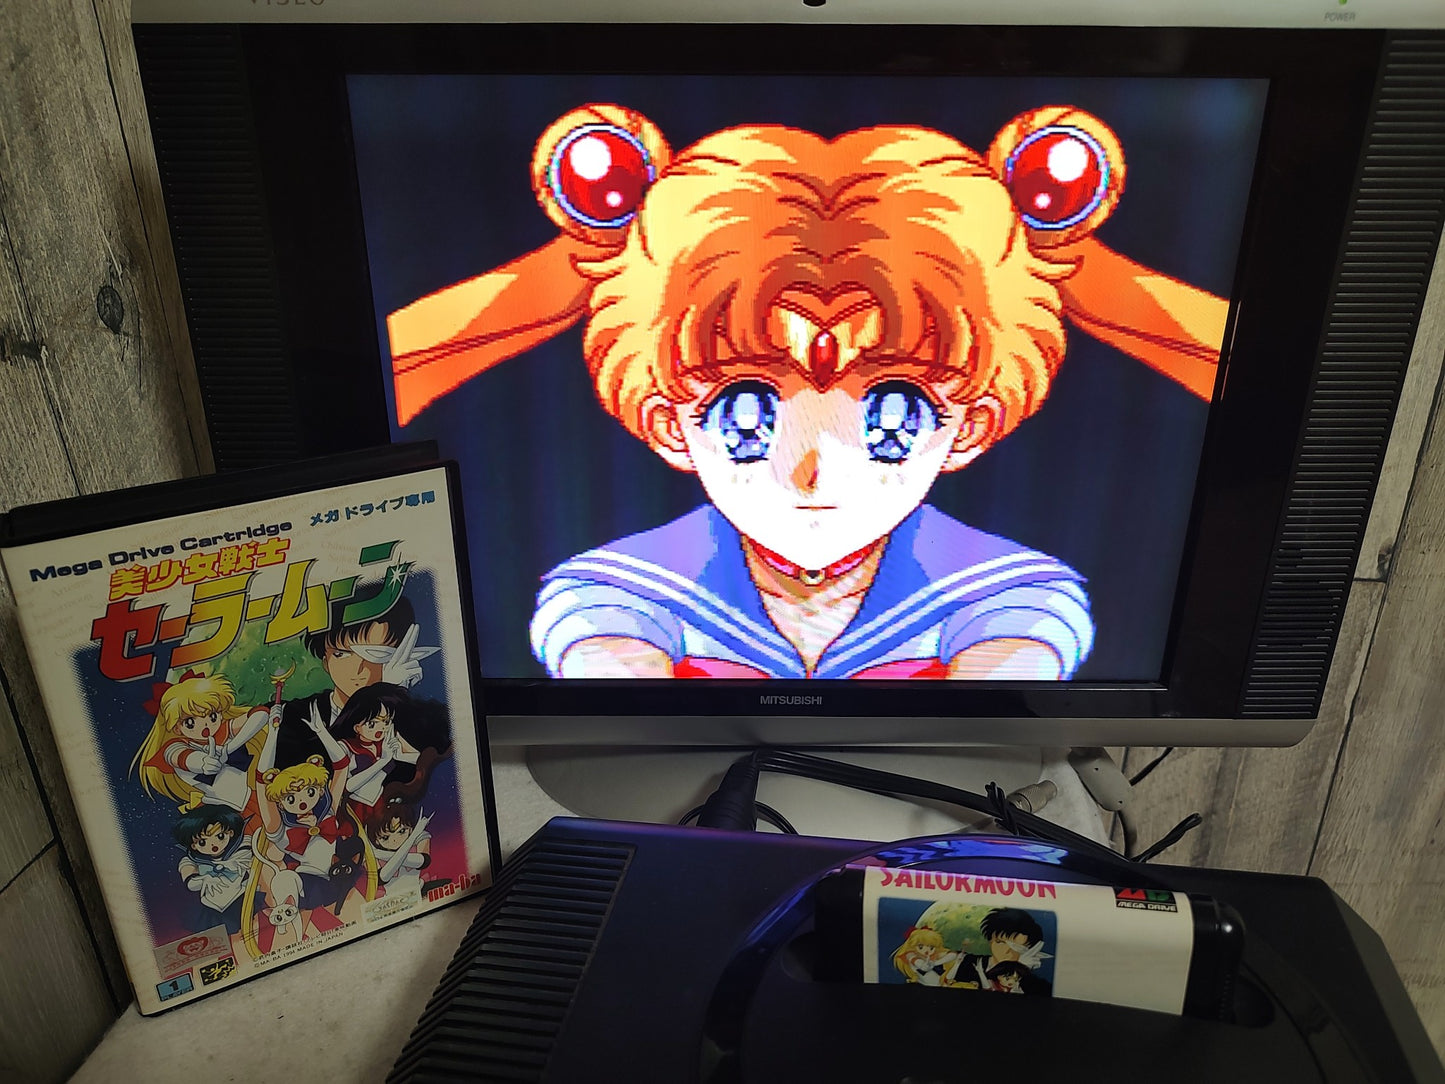 Bishoujo senshi Sailor Moon SEGA MEGA DRIVE Genesis Cartridge, Boxed set-g0301-